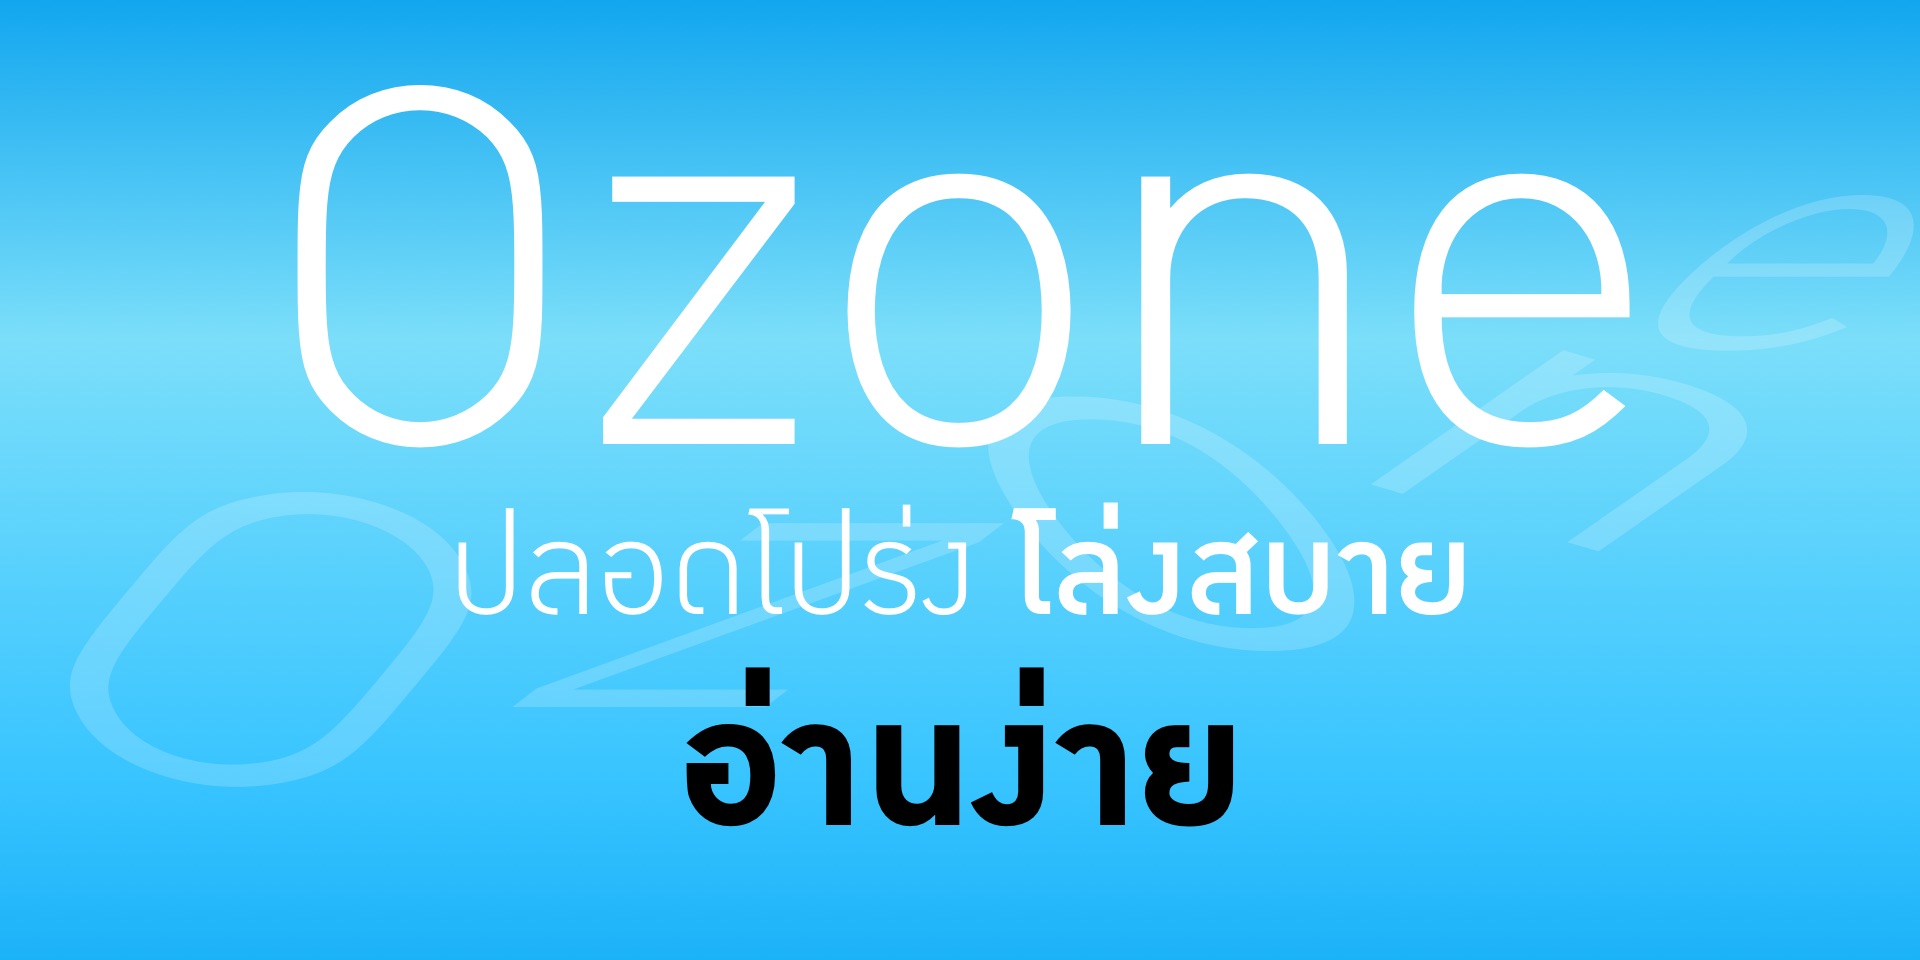 DB Ozone